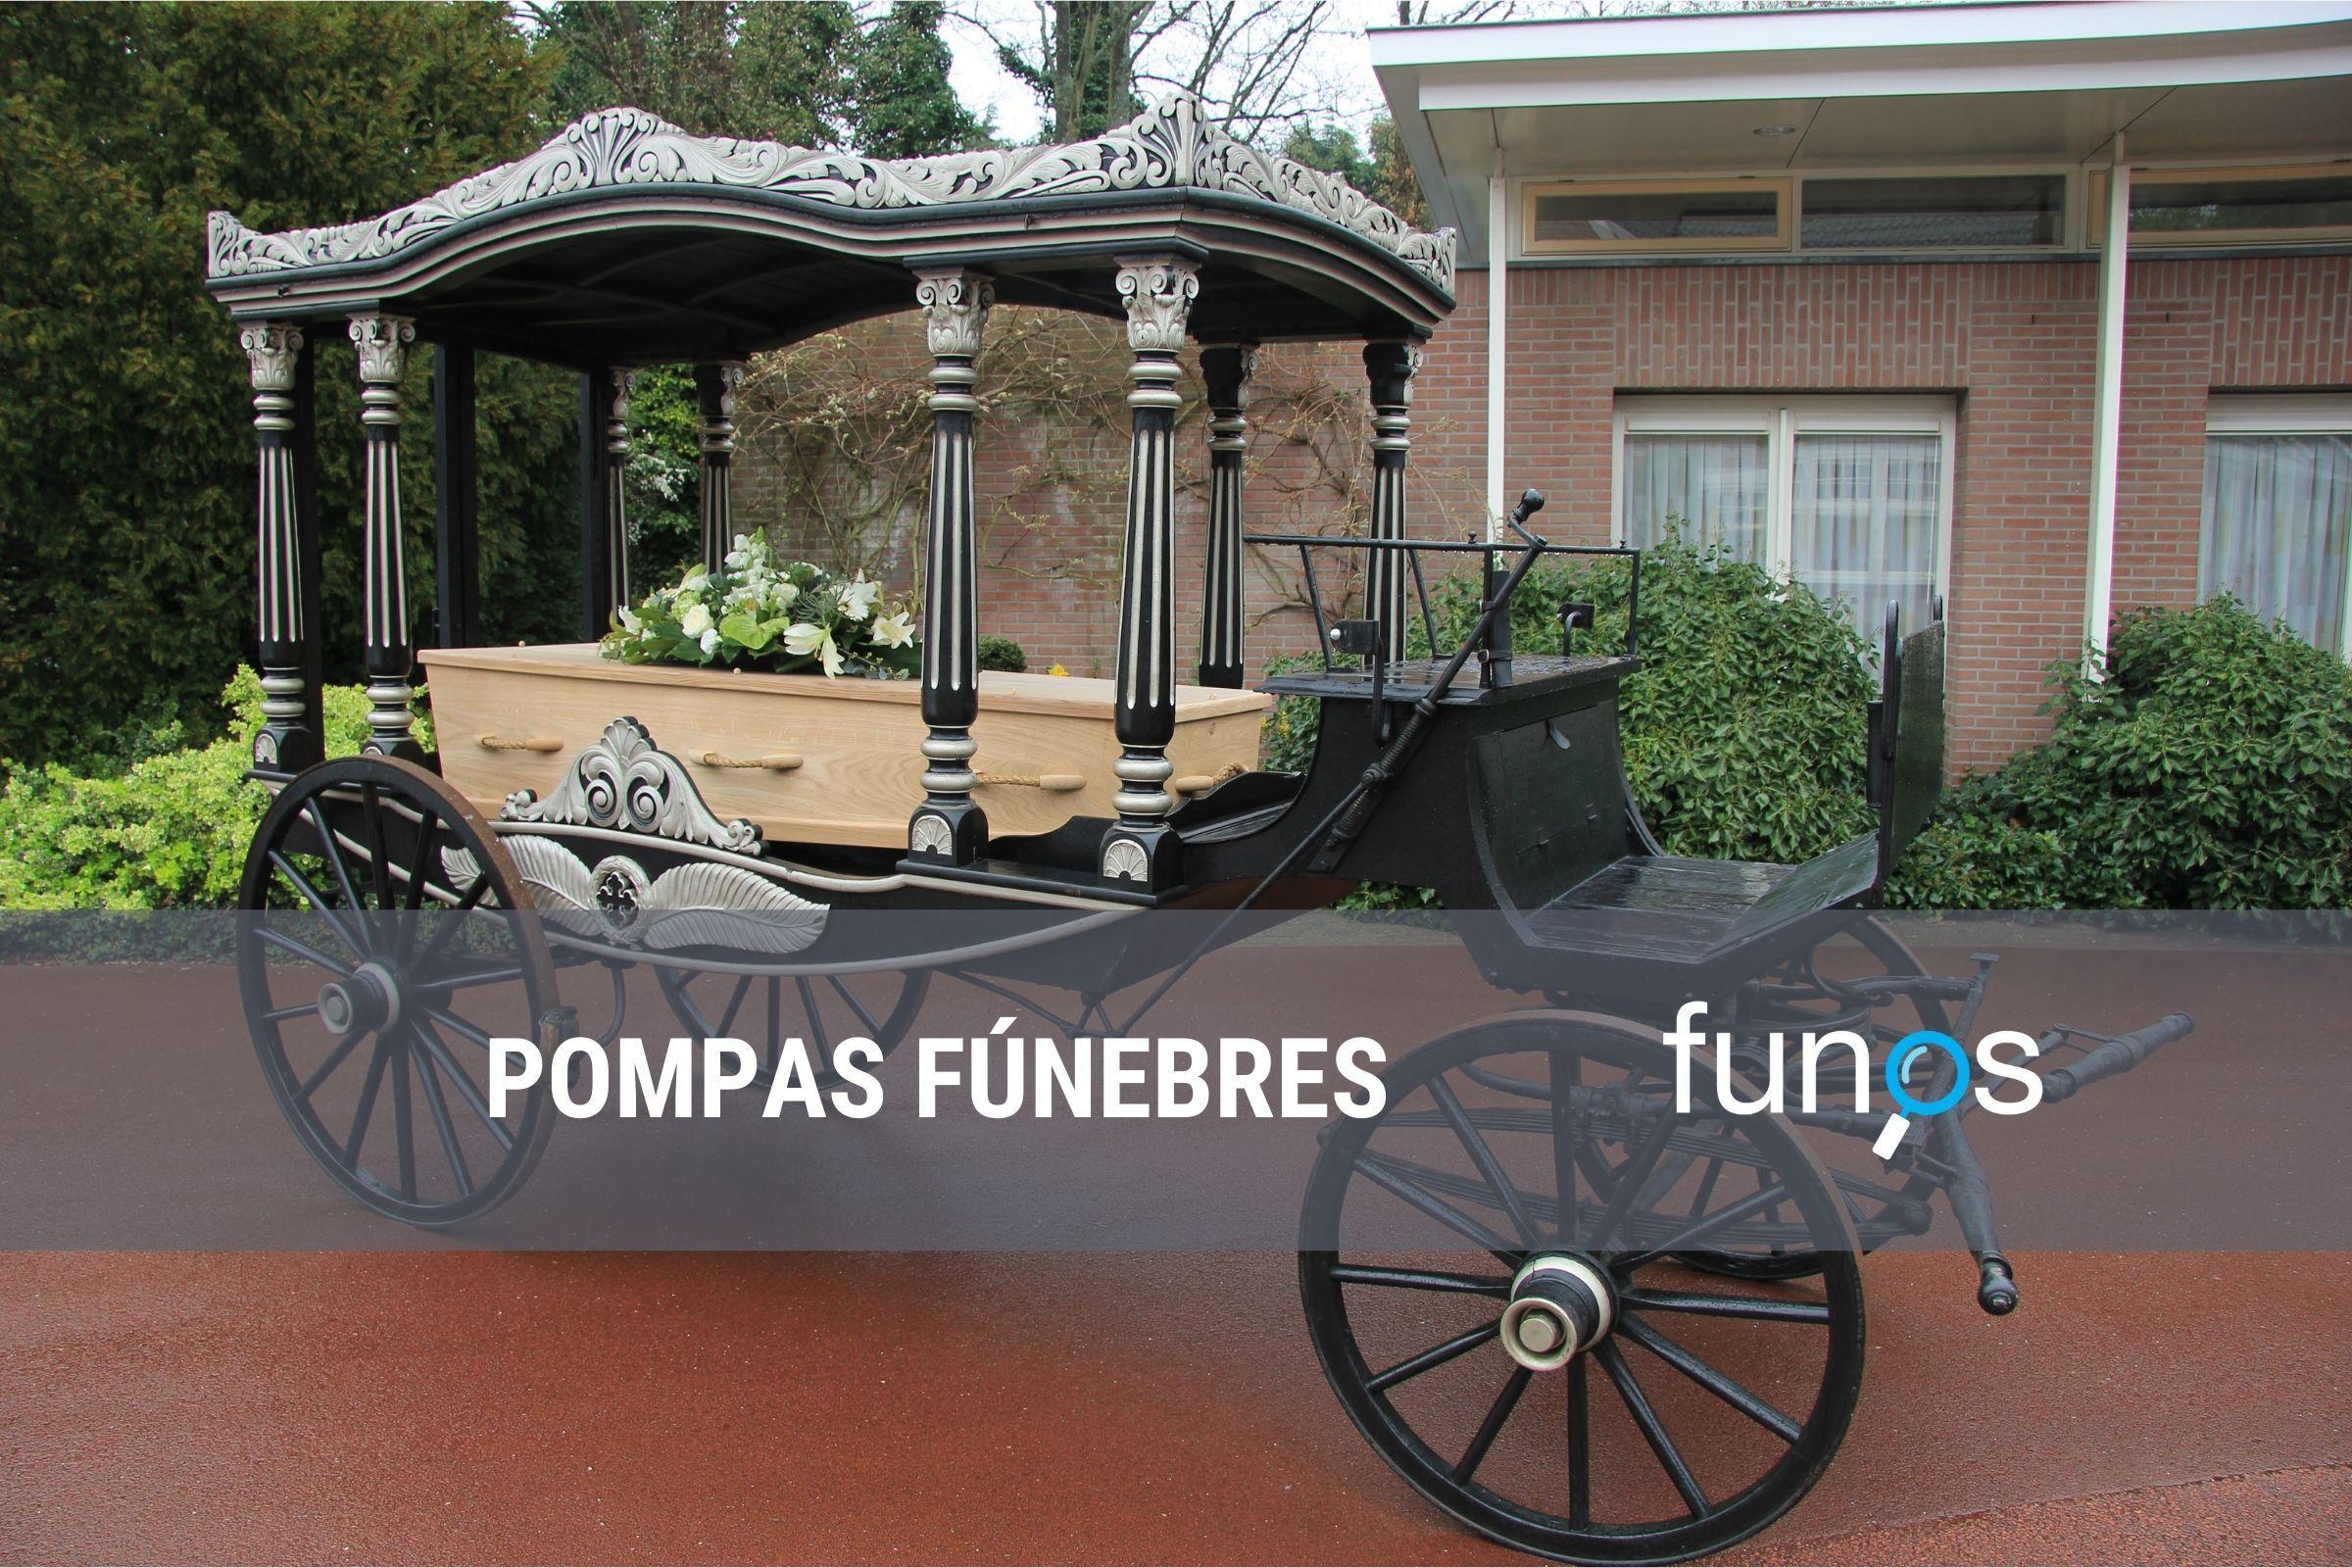 Post sobre Qué son las pompas fúnebres en Funos